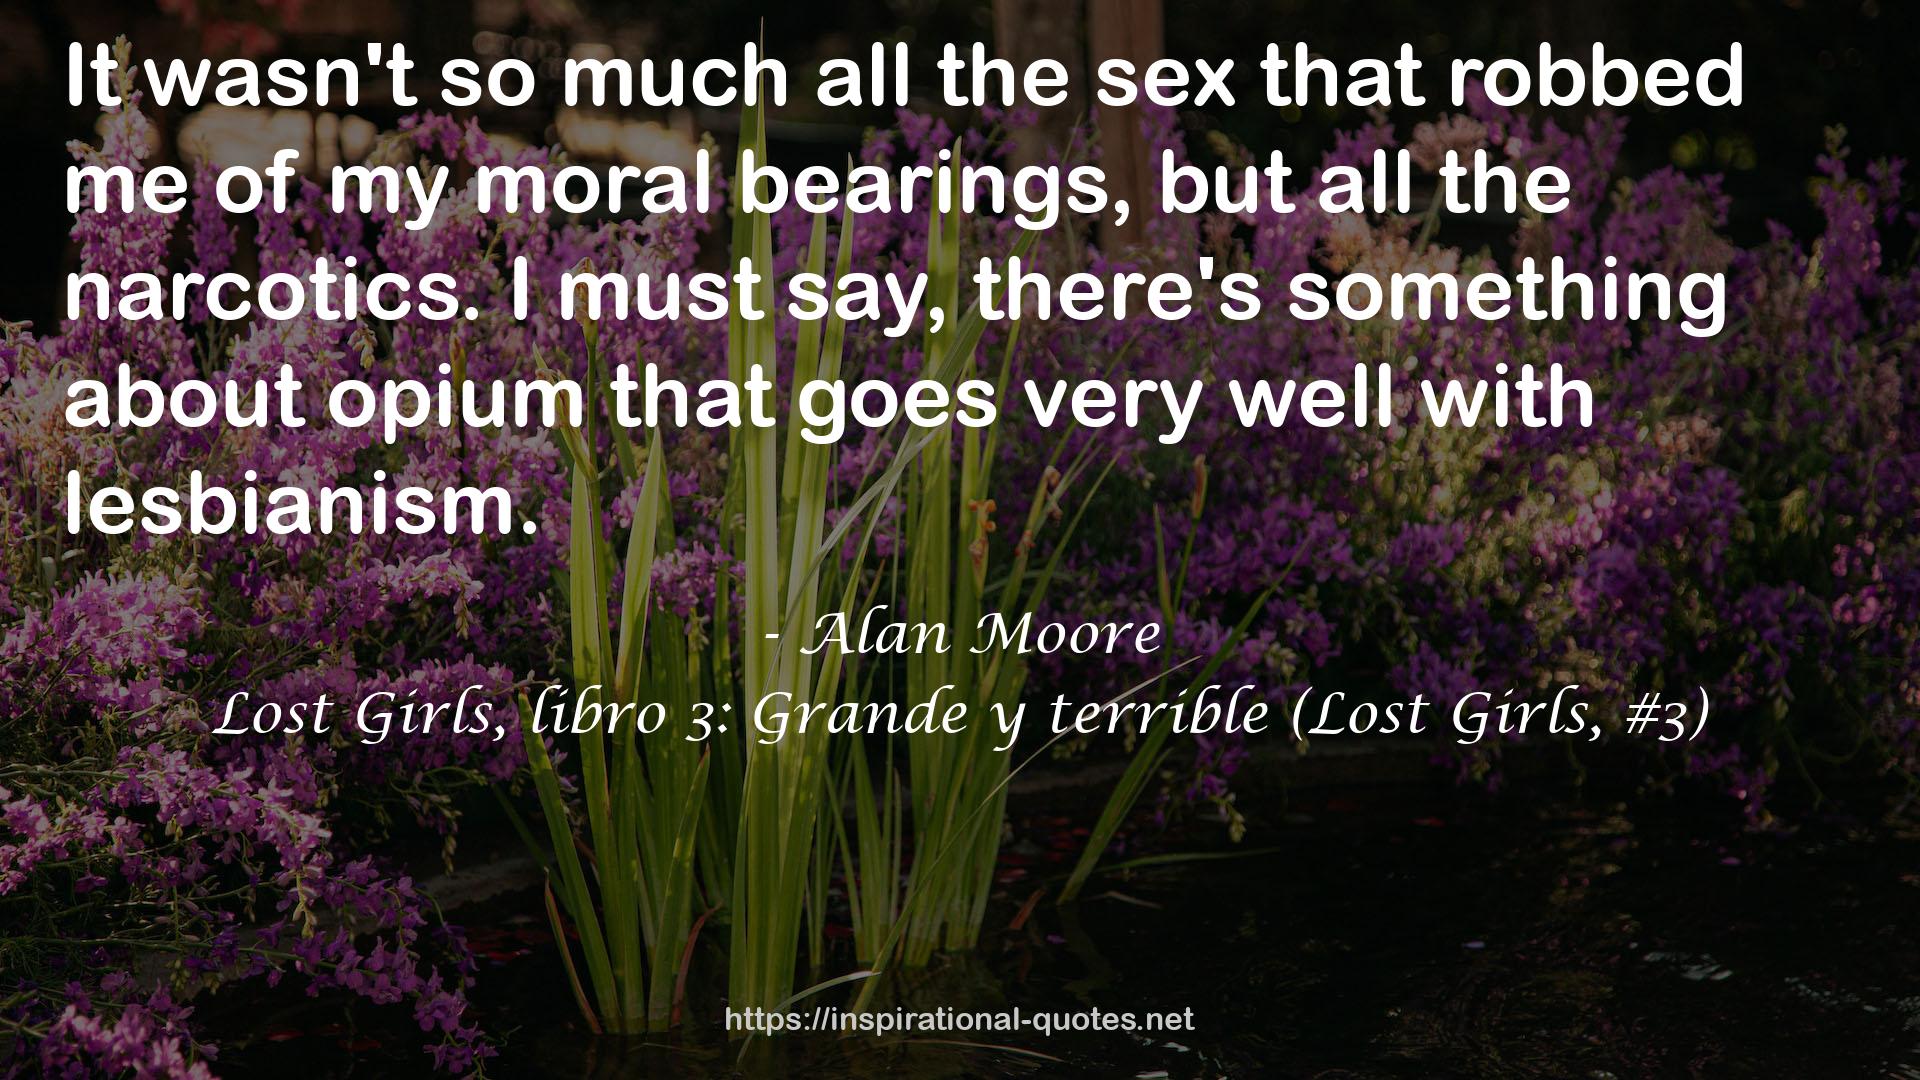 Lost Girls, libro 3: Grande y terrible (Lost Girls, #3) QUOTES